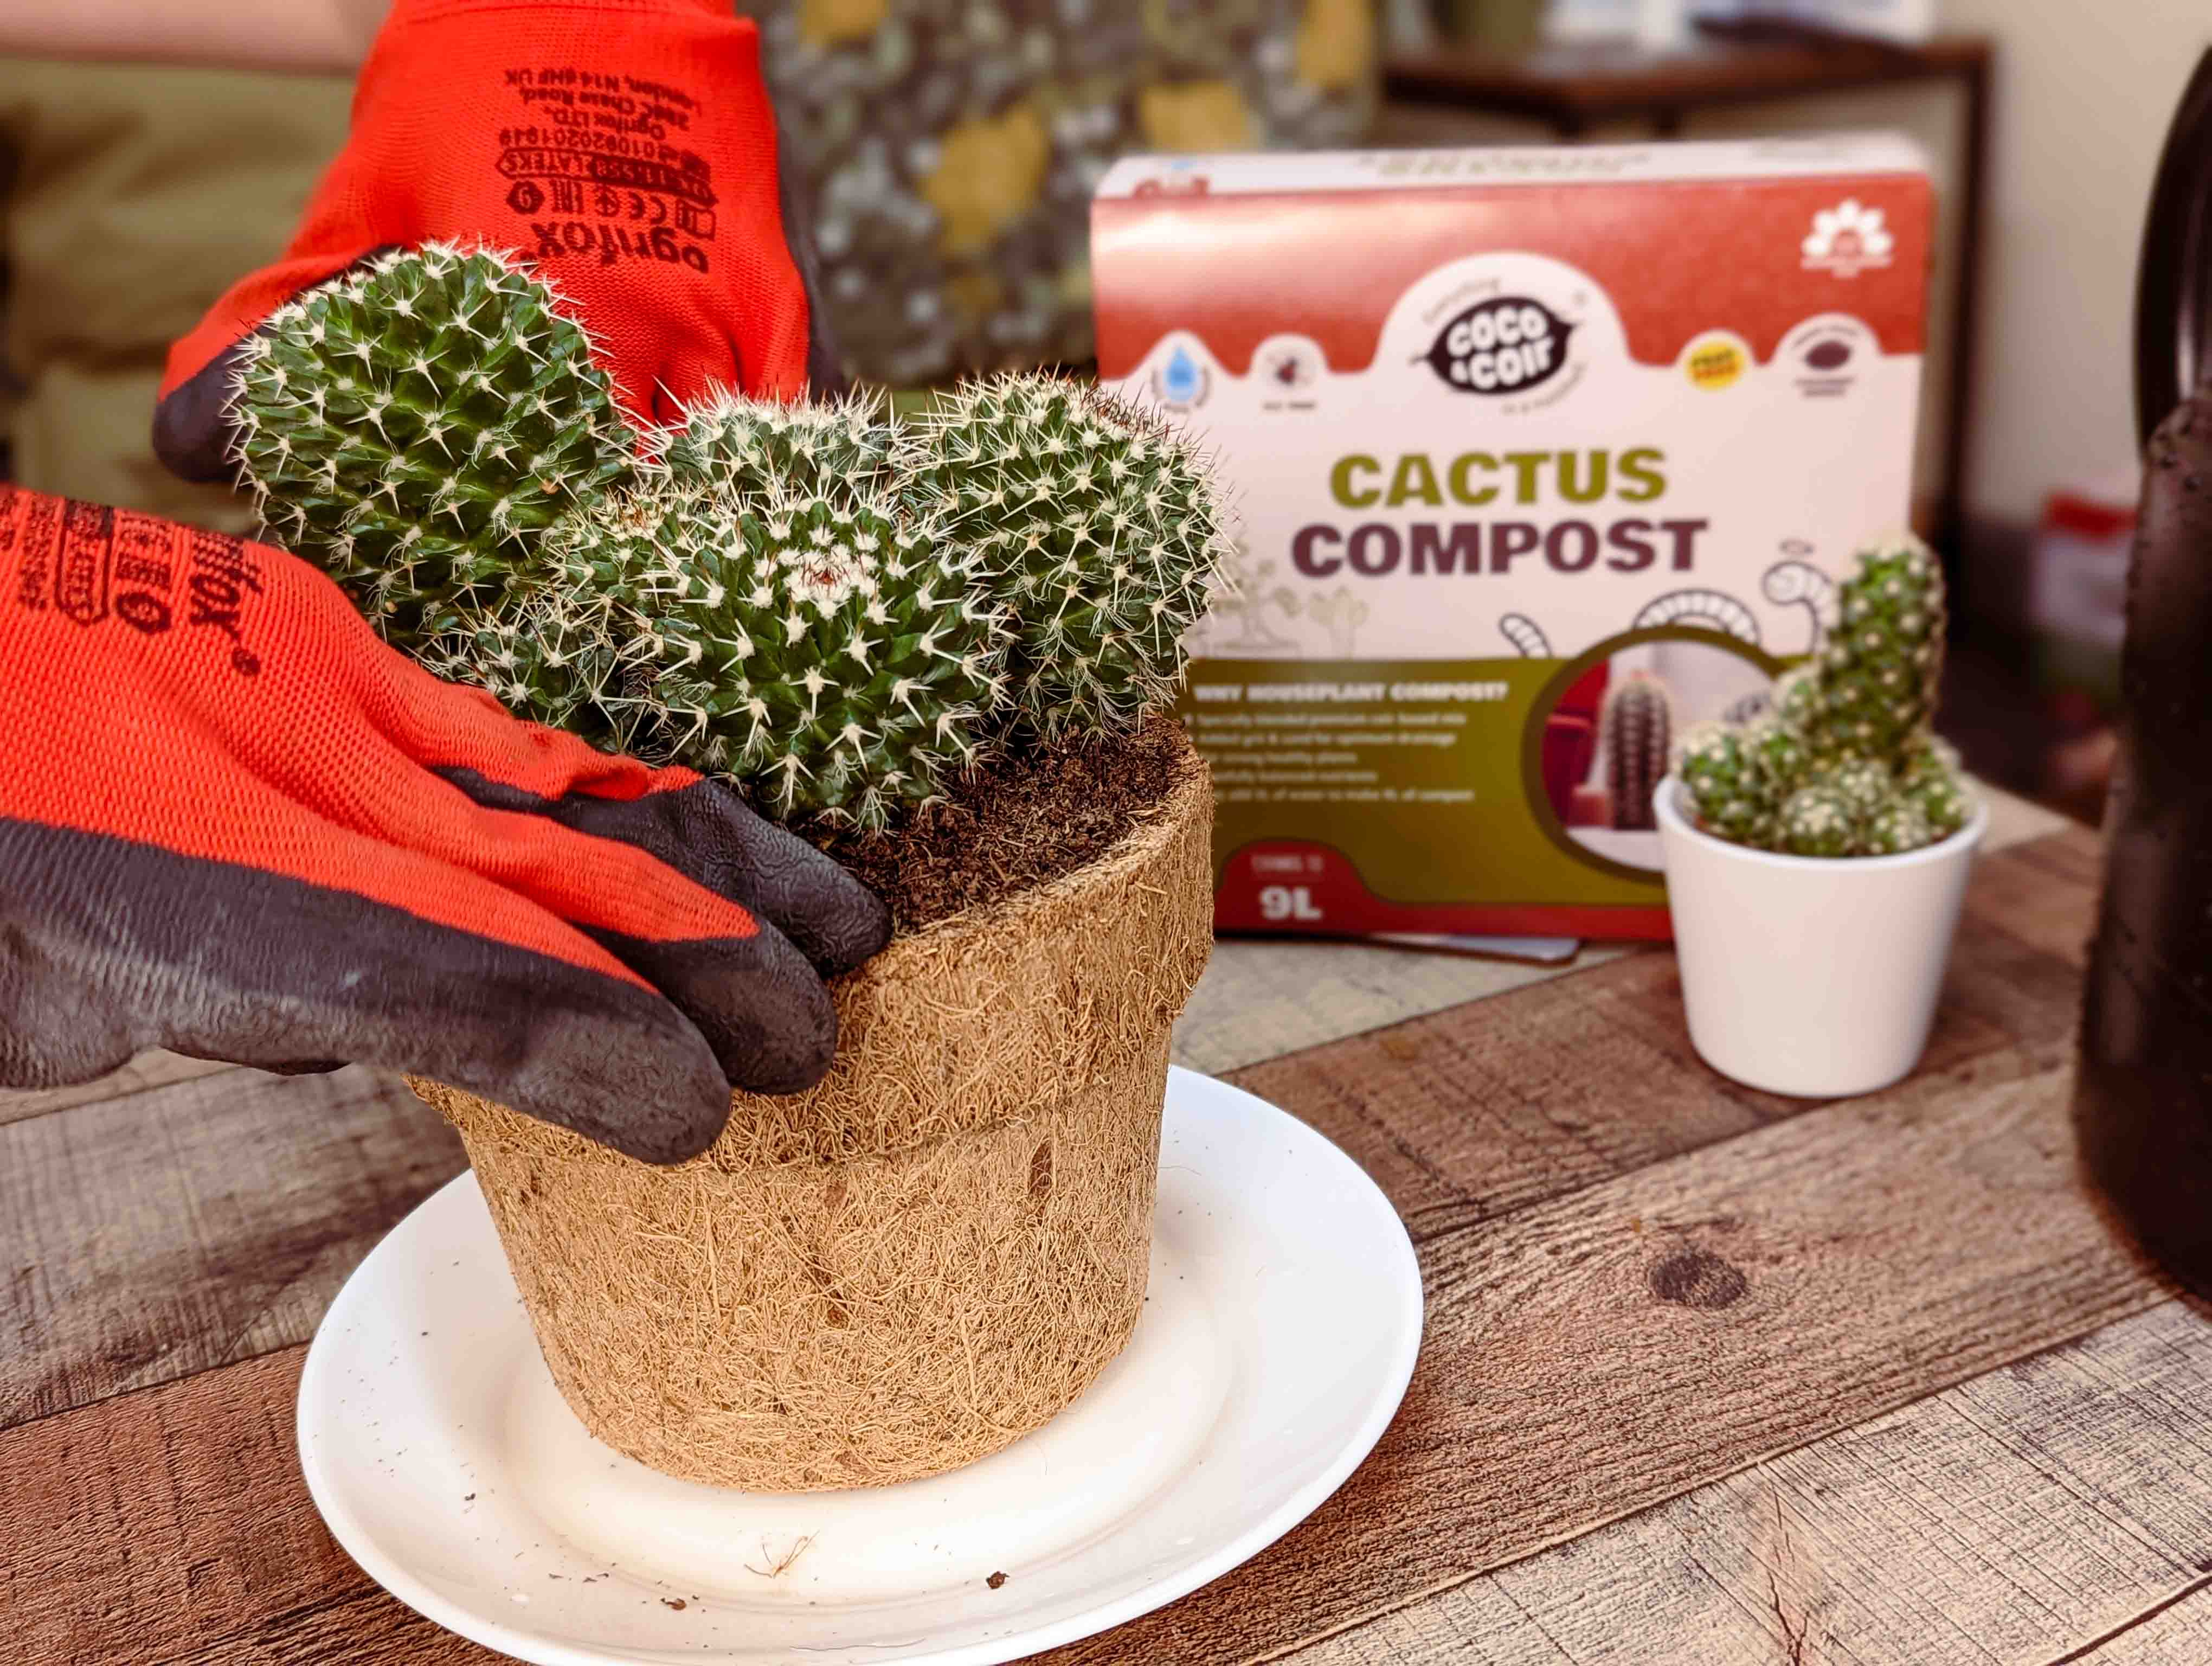 Cactus Compost - 9L